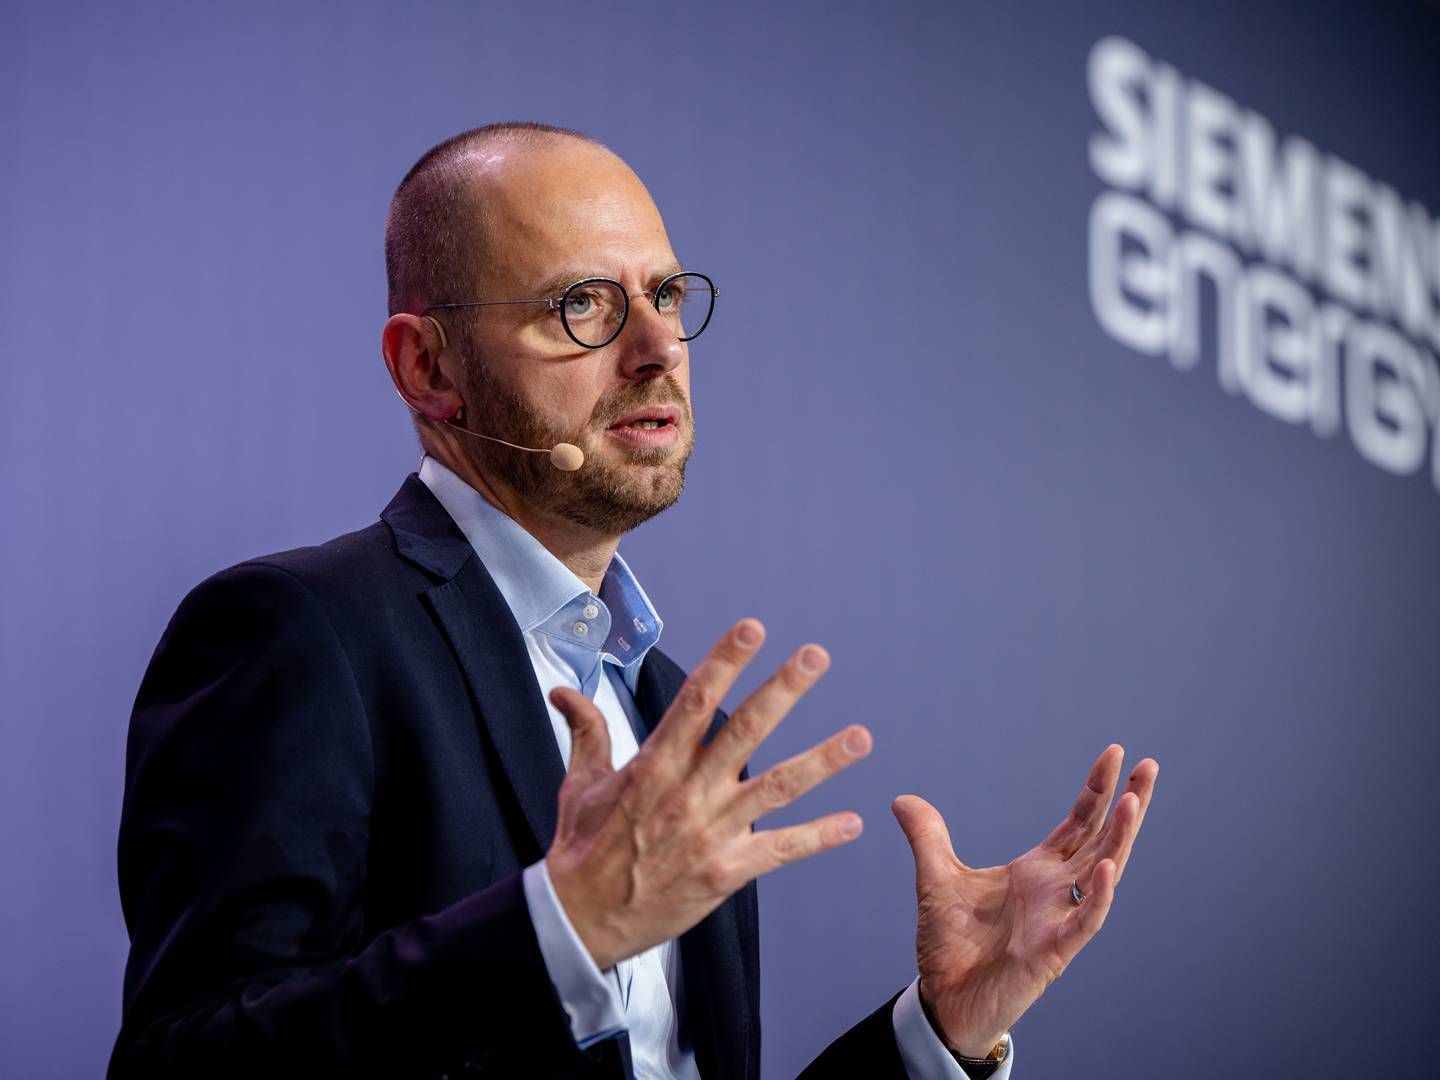 FREGANG IGJEN: Fremgangen kan allerede sees hos Siemens Gamesa, sier Siemens Energy-sjef Christian Bruch. Men lønnsomheten er fortsatt et stykke unna. | Foto: Siemens Energy